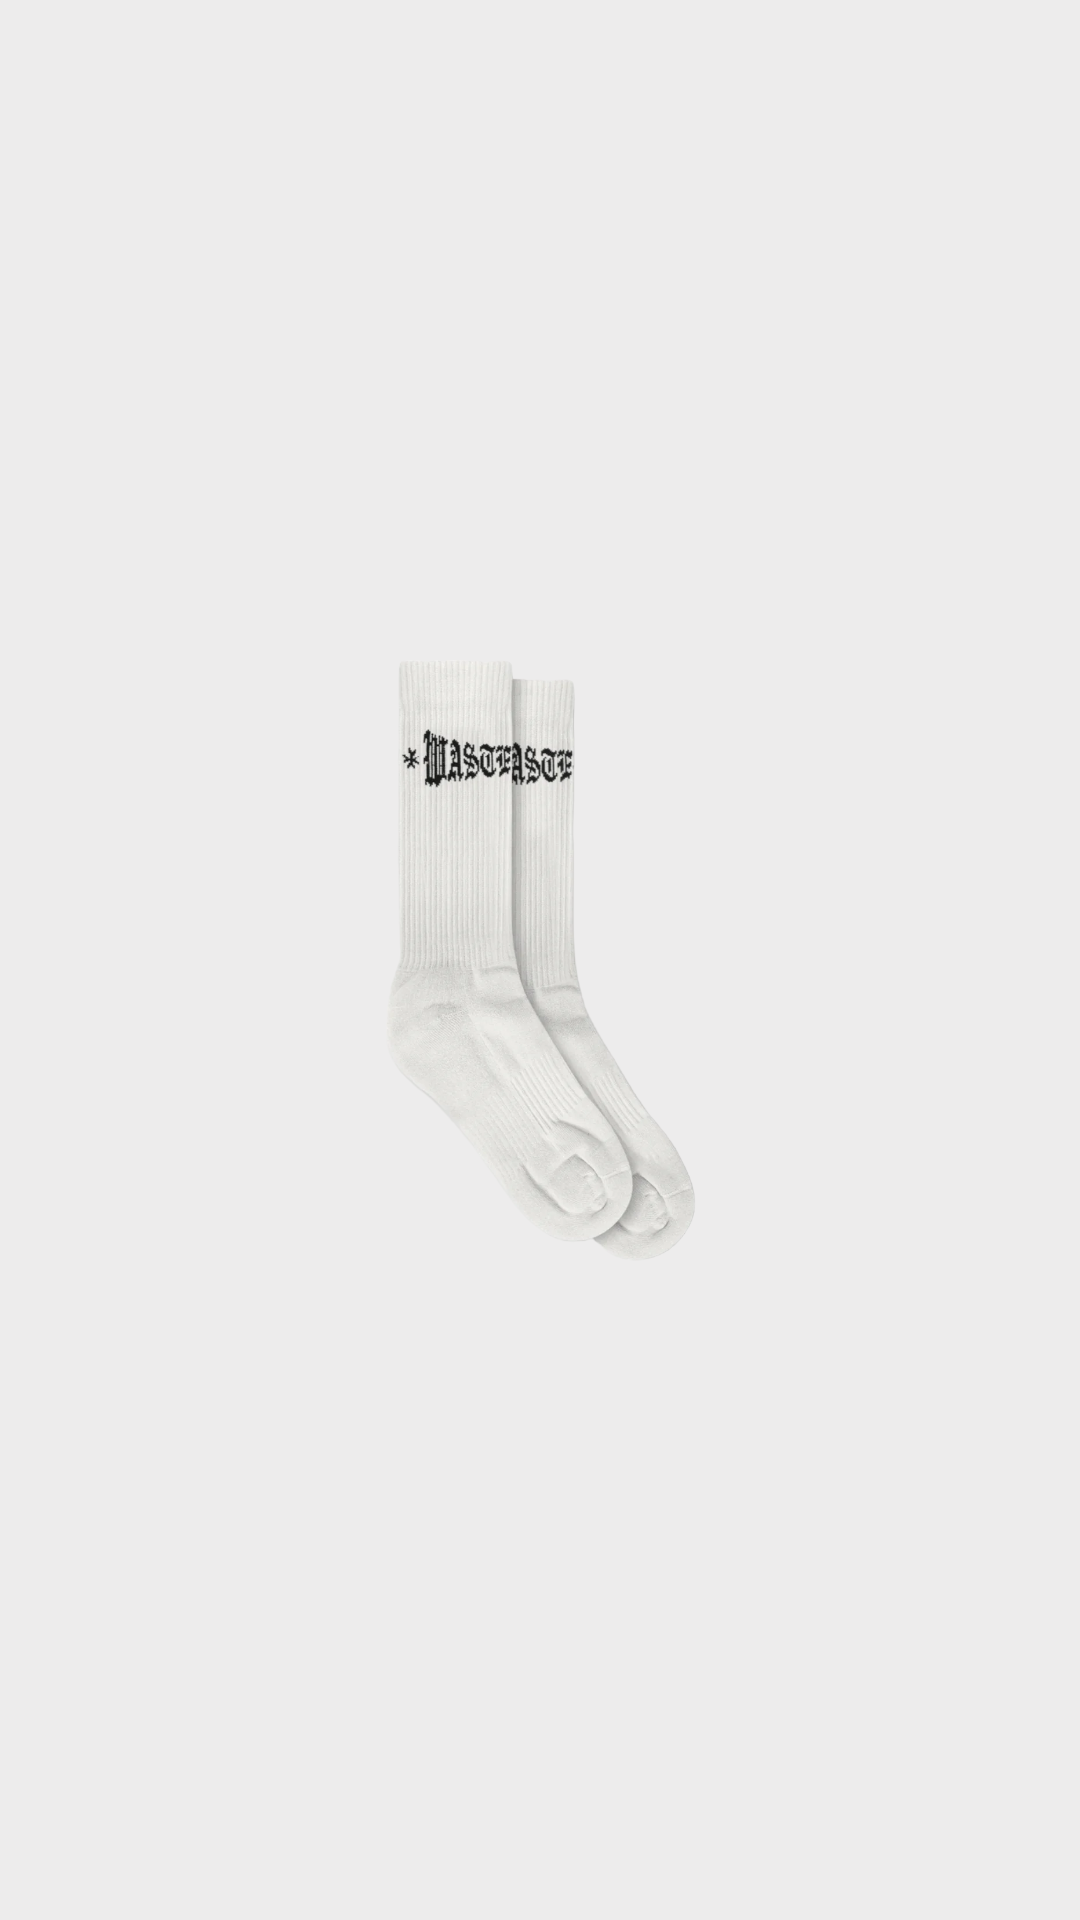 London Cross Socks White